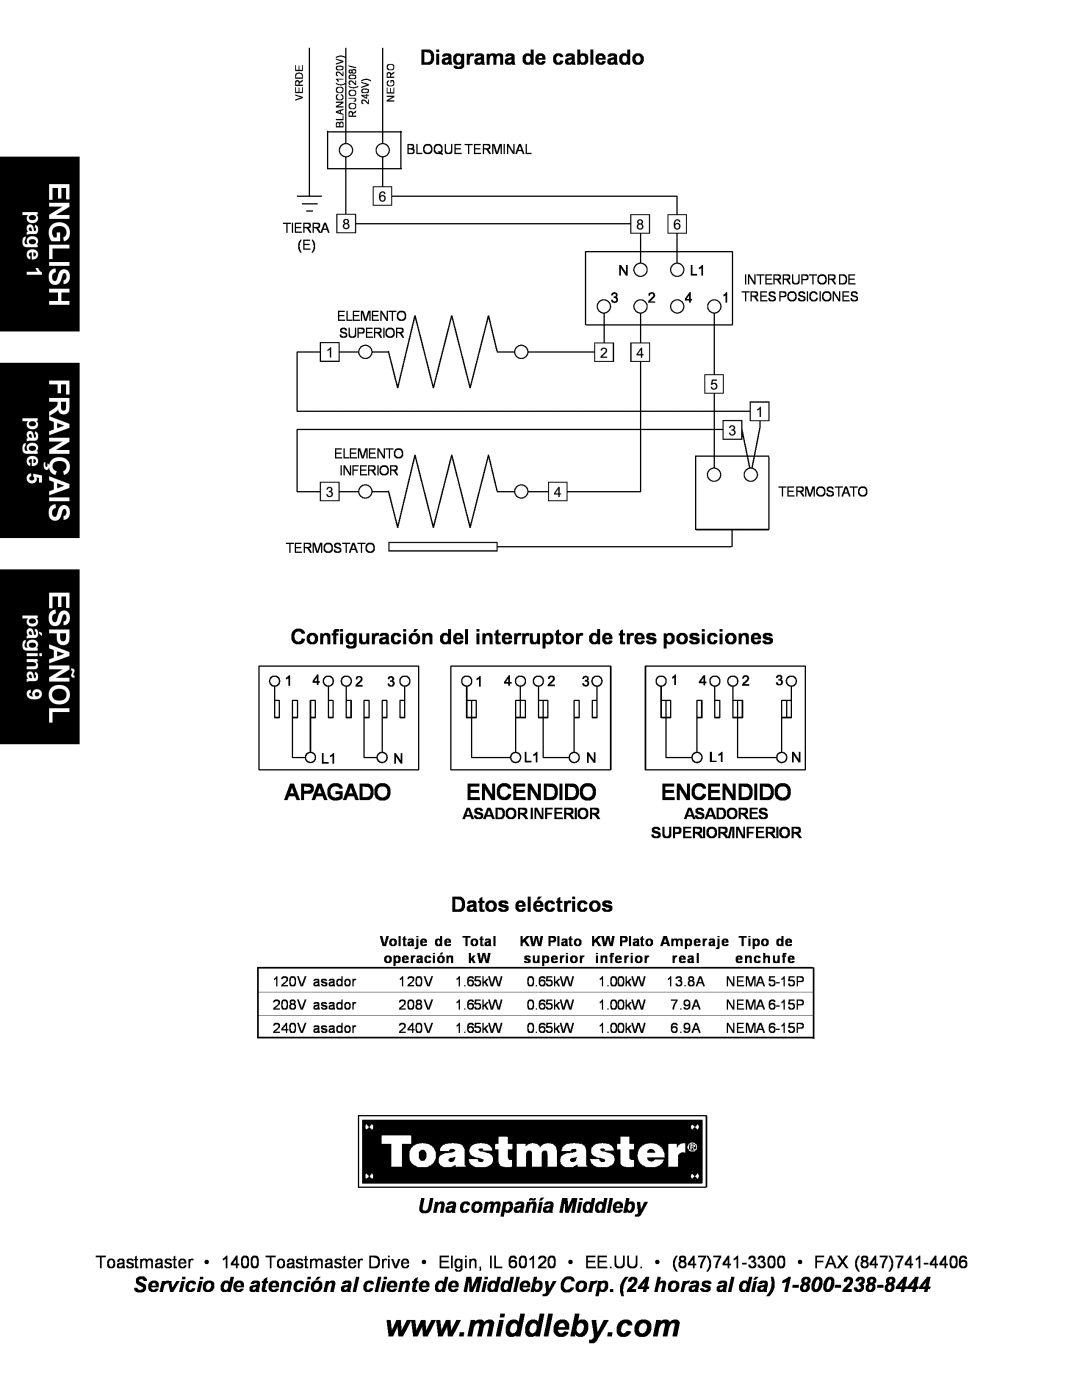 Toastmaster A710 Apagado Encendido Encendido, Diagrama de cableado, Configuración del interruptor de tres posiciones, real 